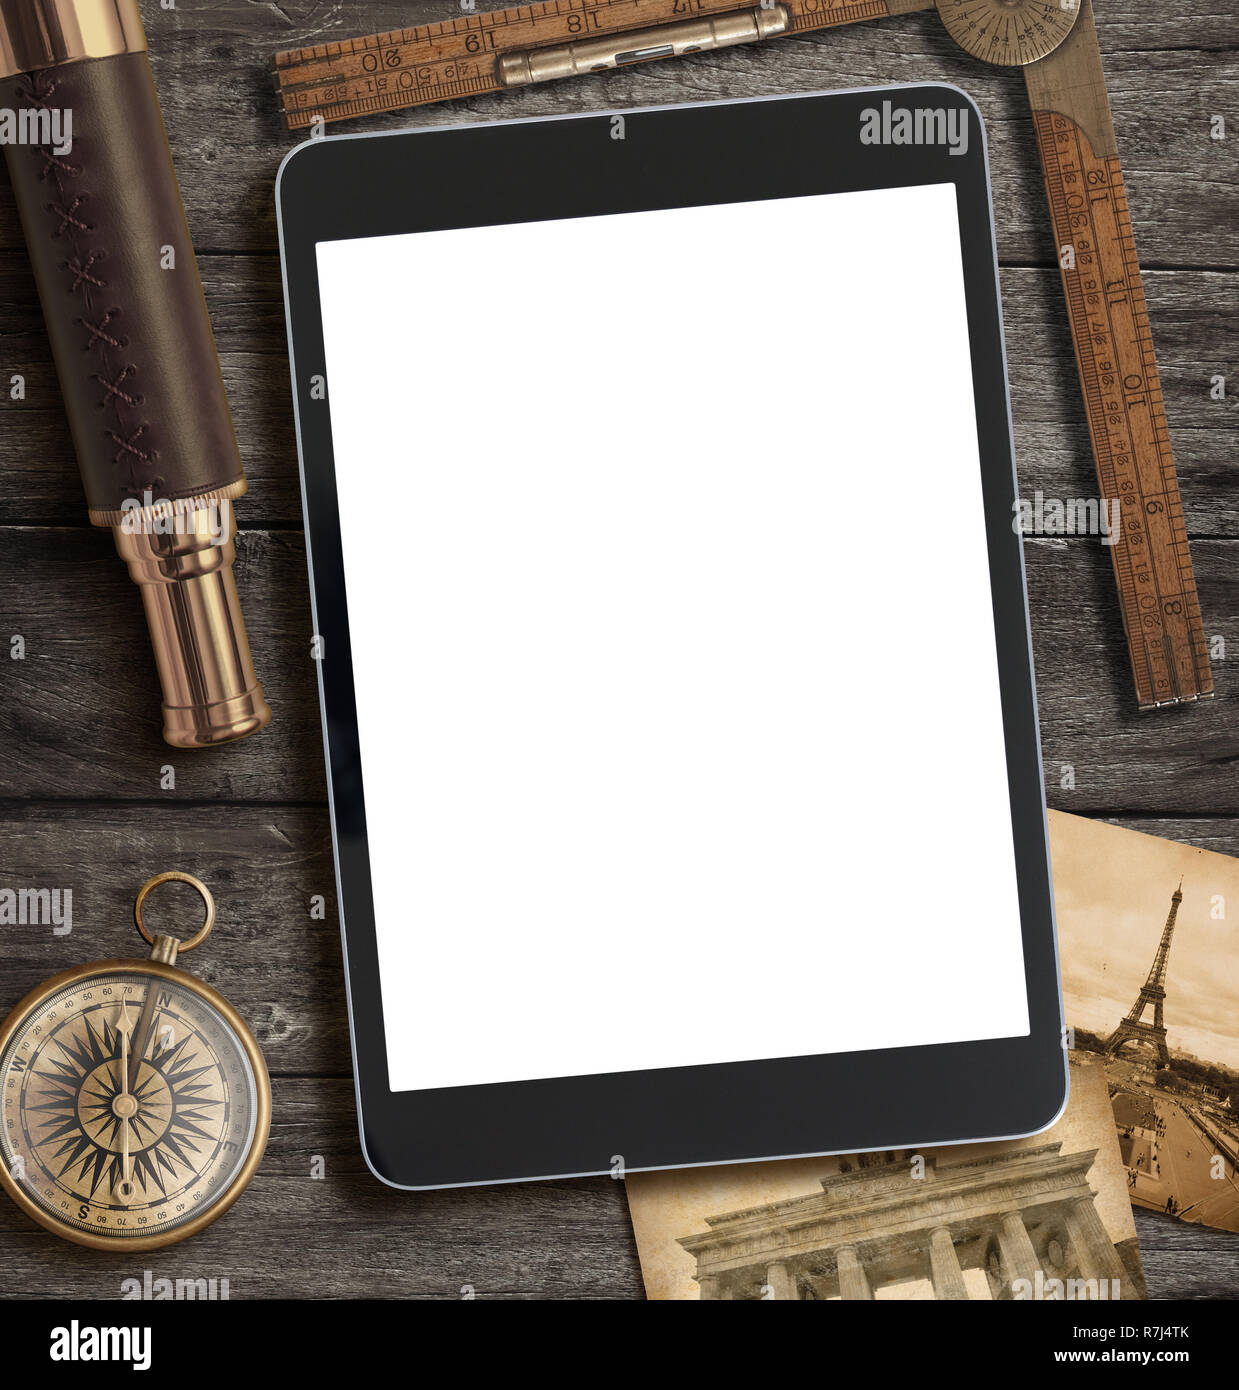 Abenteuer, Exploration und Travel Concept mit modernen Tablet-PC Stockfoto